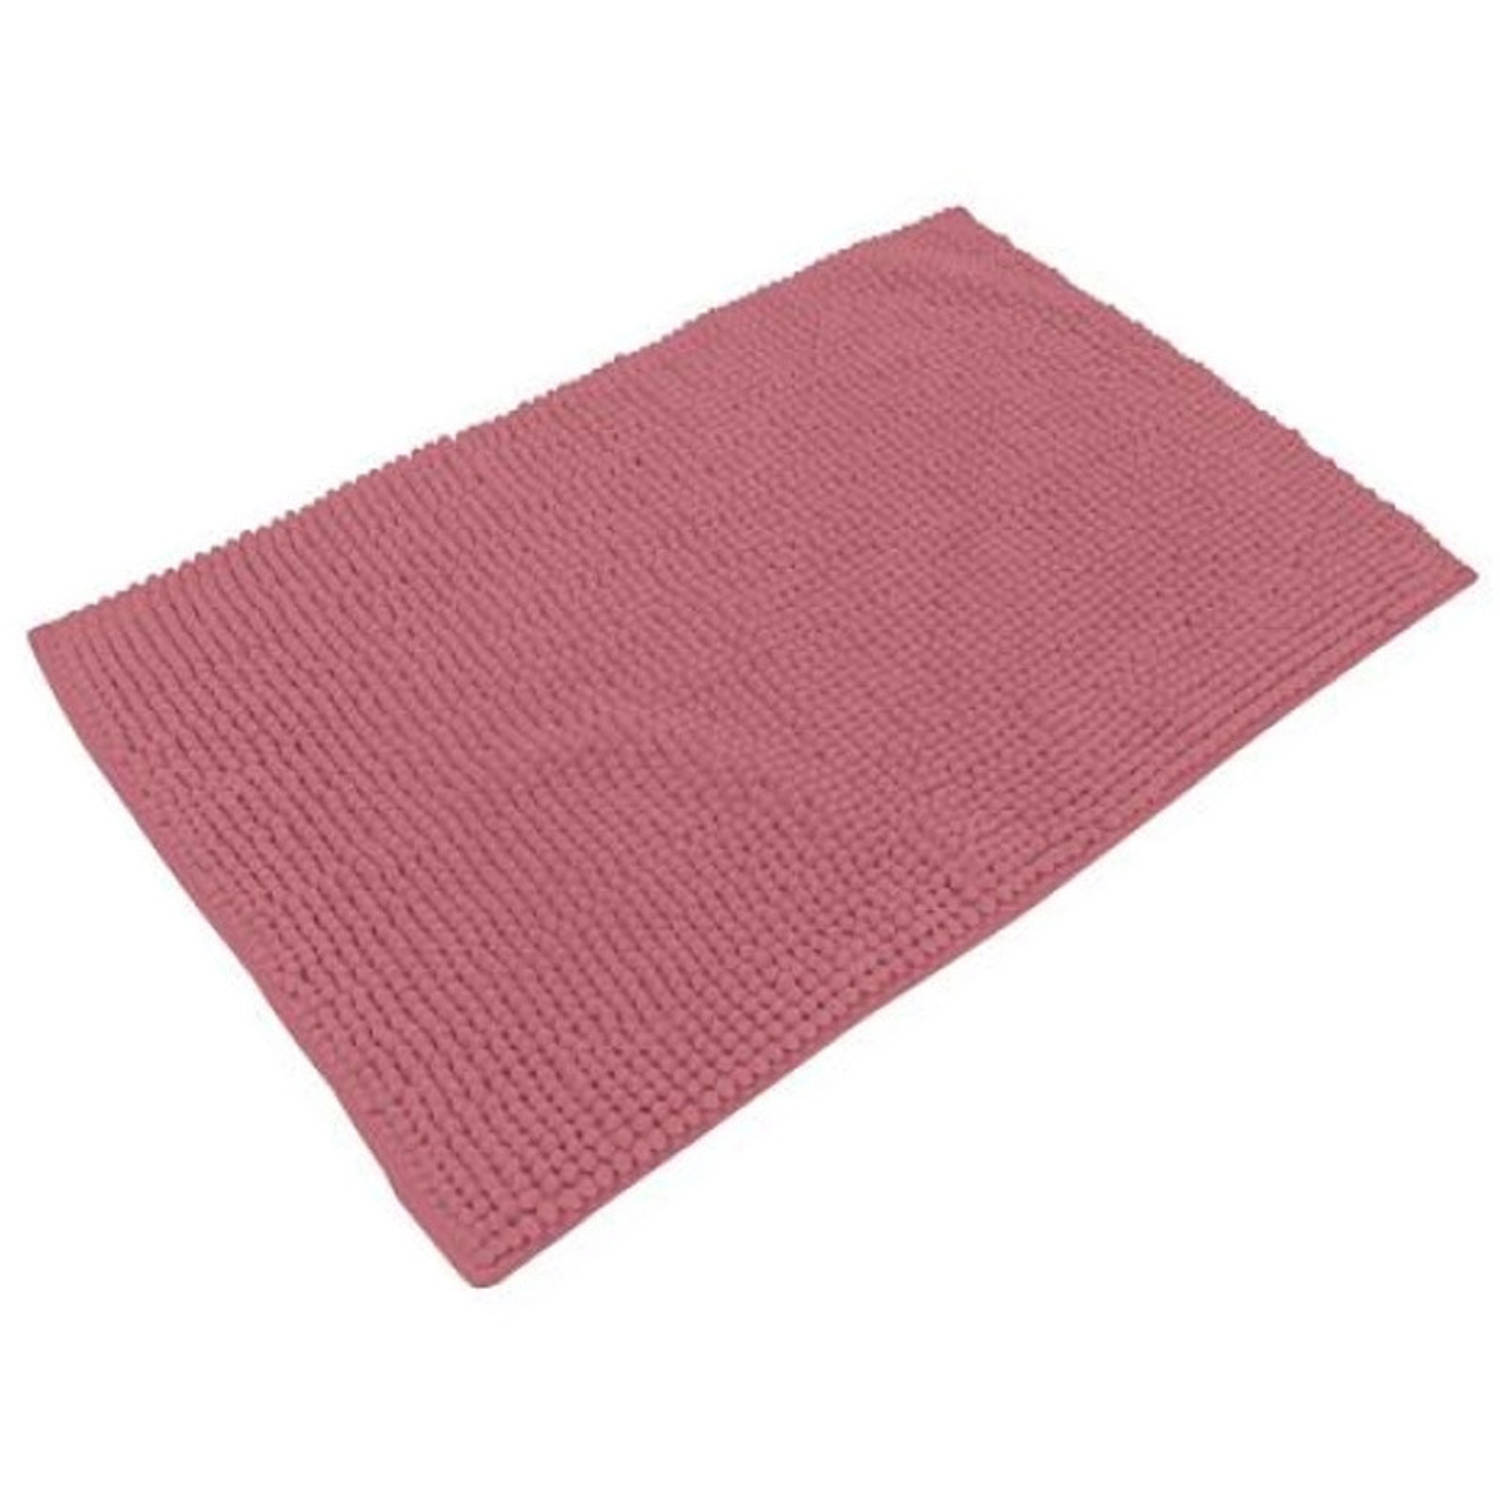 Urban Living Badkamerkleedje/badmat tapijt - voor op de vloer - oud roze - 50 x 80 cm - anti slip